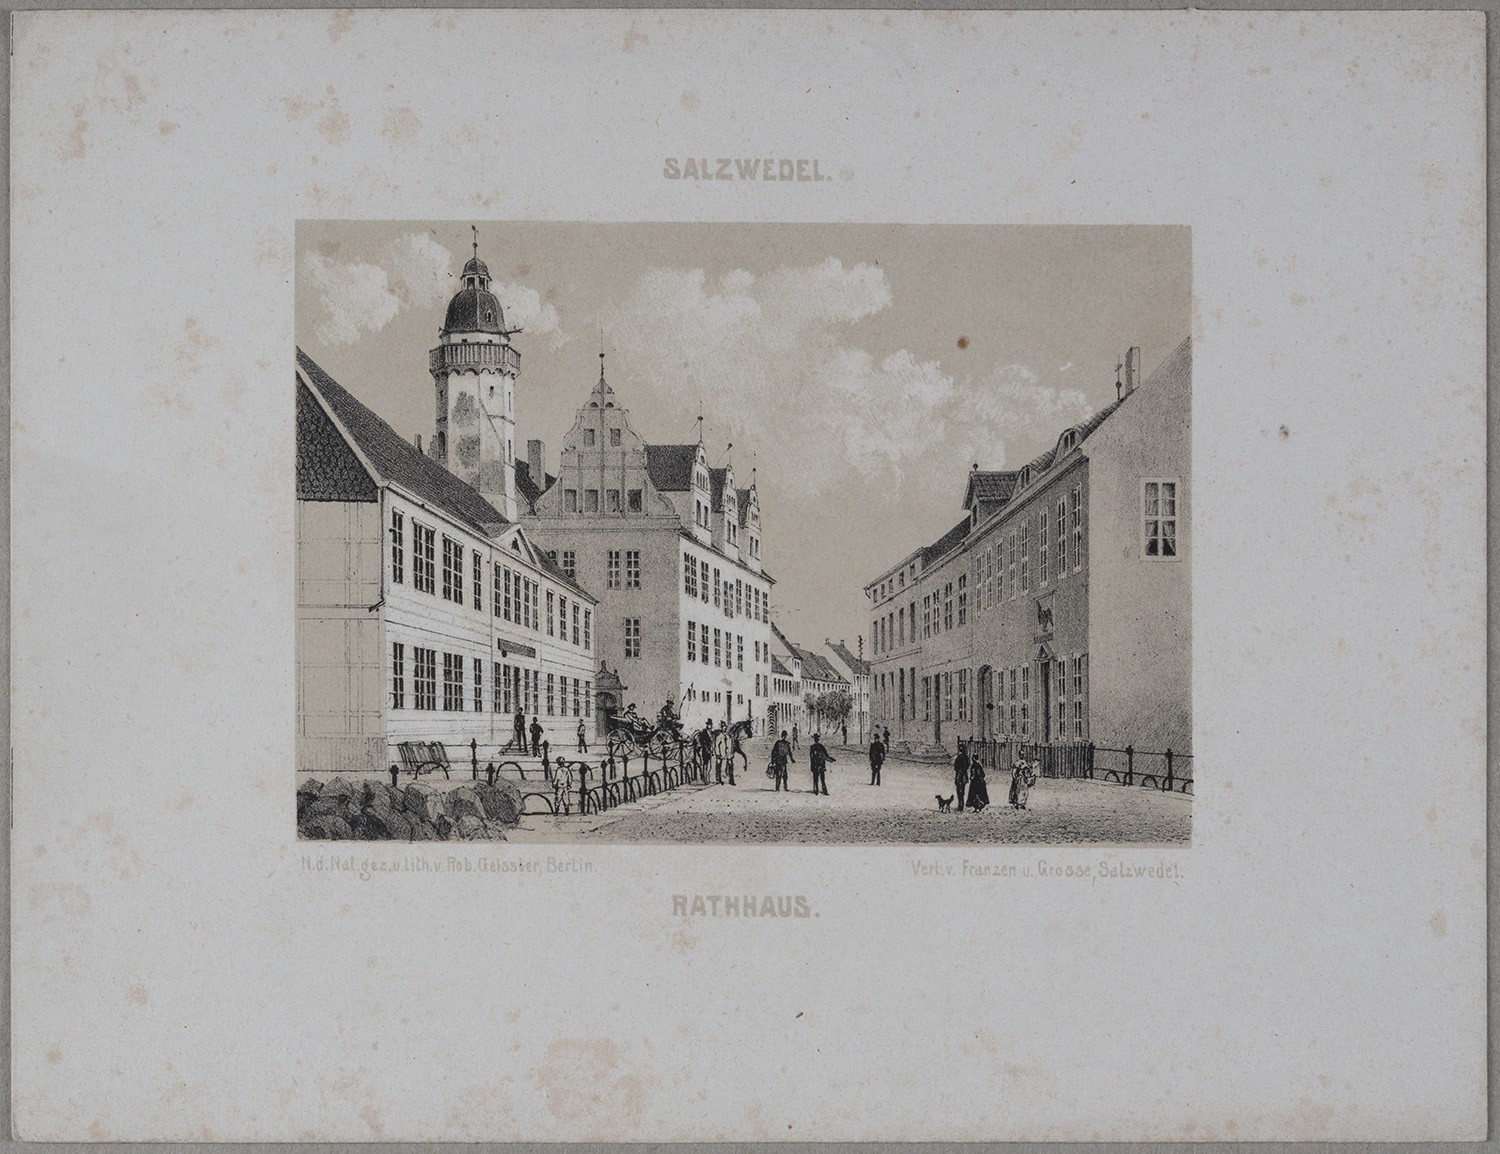 Salzwedel: Rathaus (Landesgeschichtliche Vereinigung für die Mark Brandenburg e.V., Archiv CC BY)